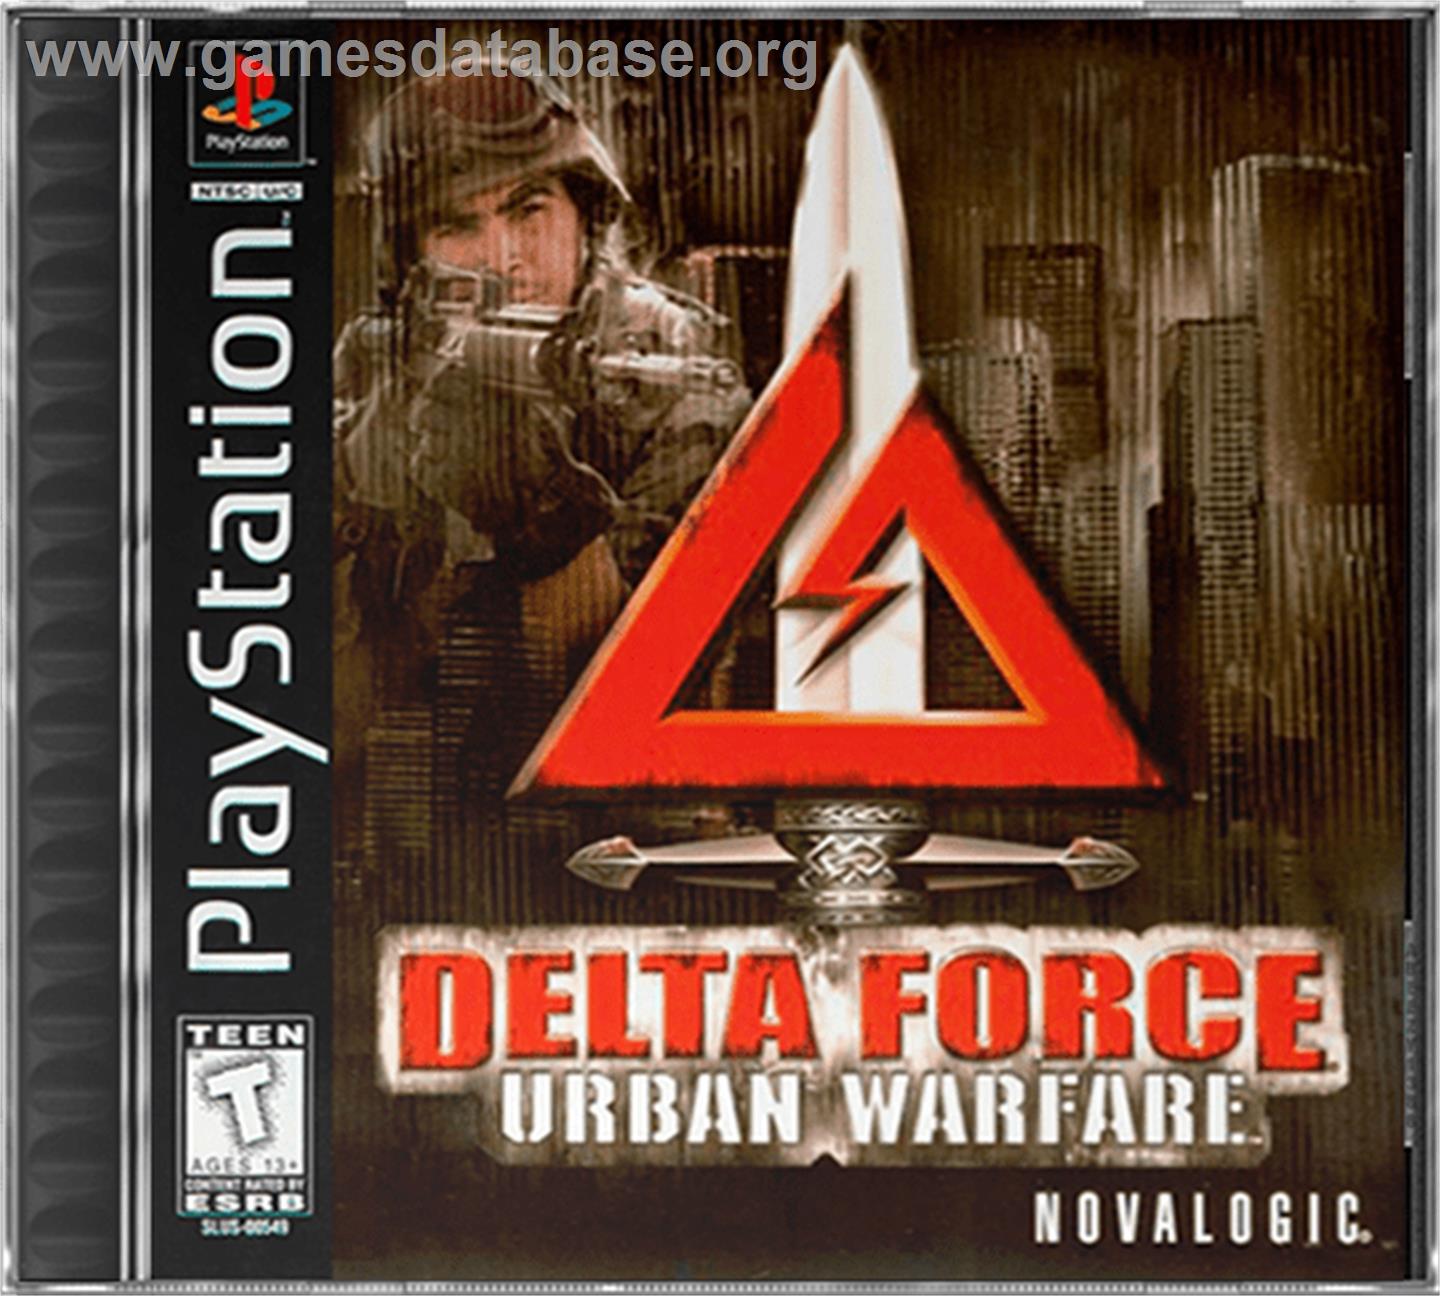 Delta Force: Urban Warfare - Sony Playstation - Artwork - Box